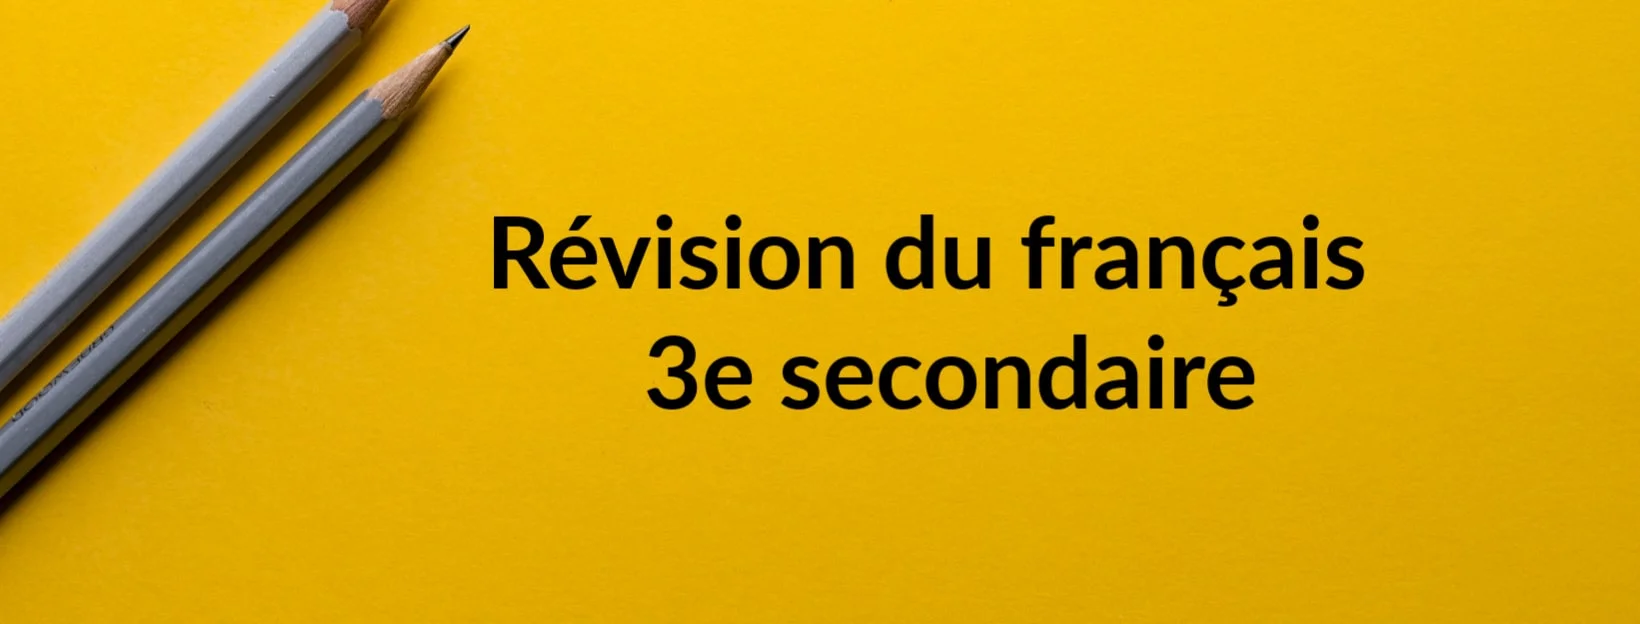 Révision du français 3e secondaire